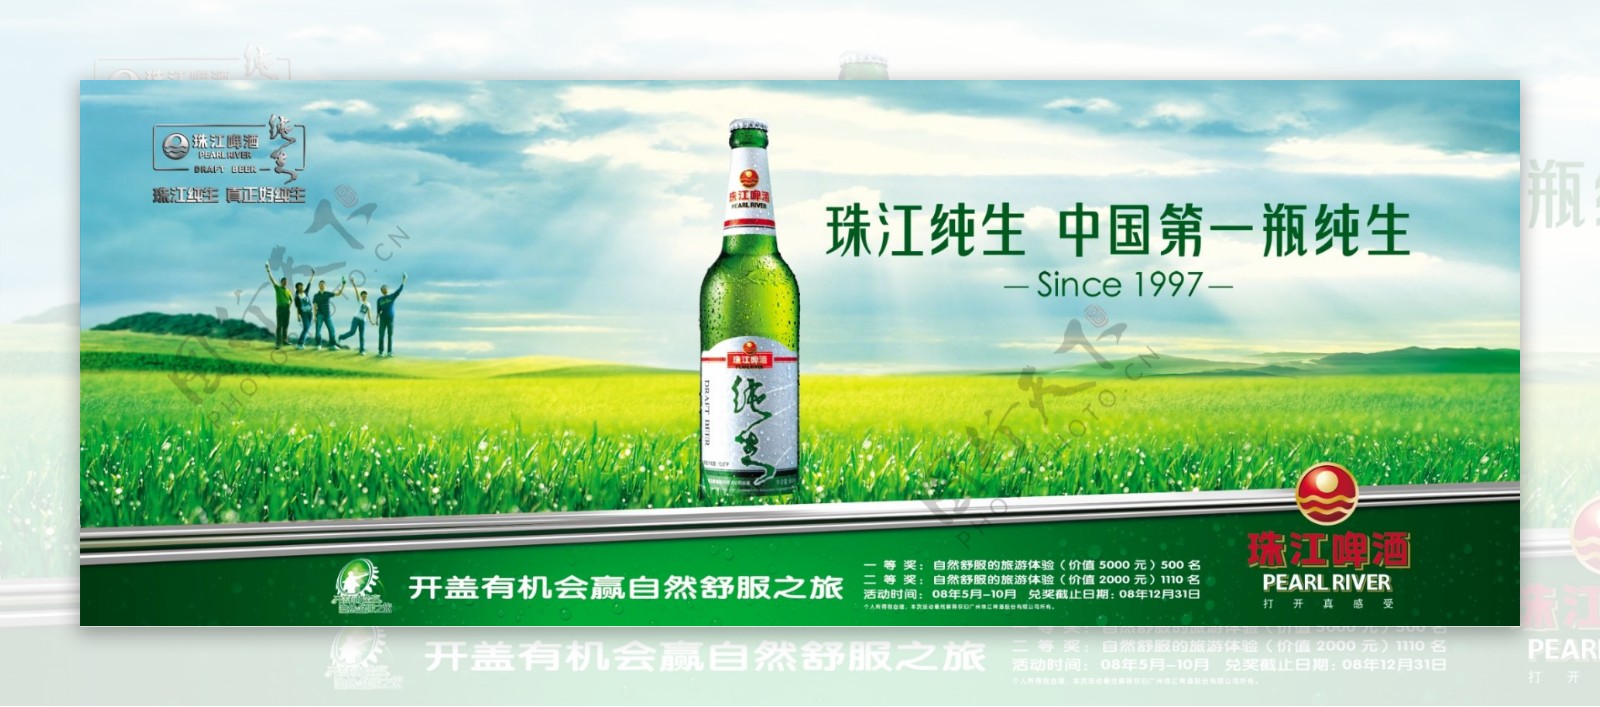 珠江纯生啤酒户外广告图片